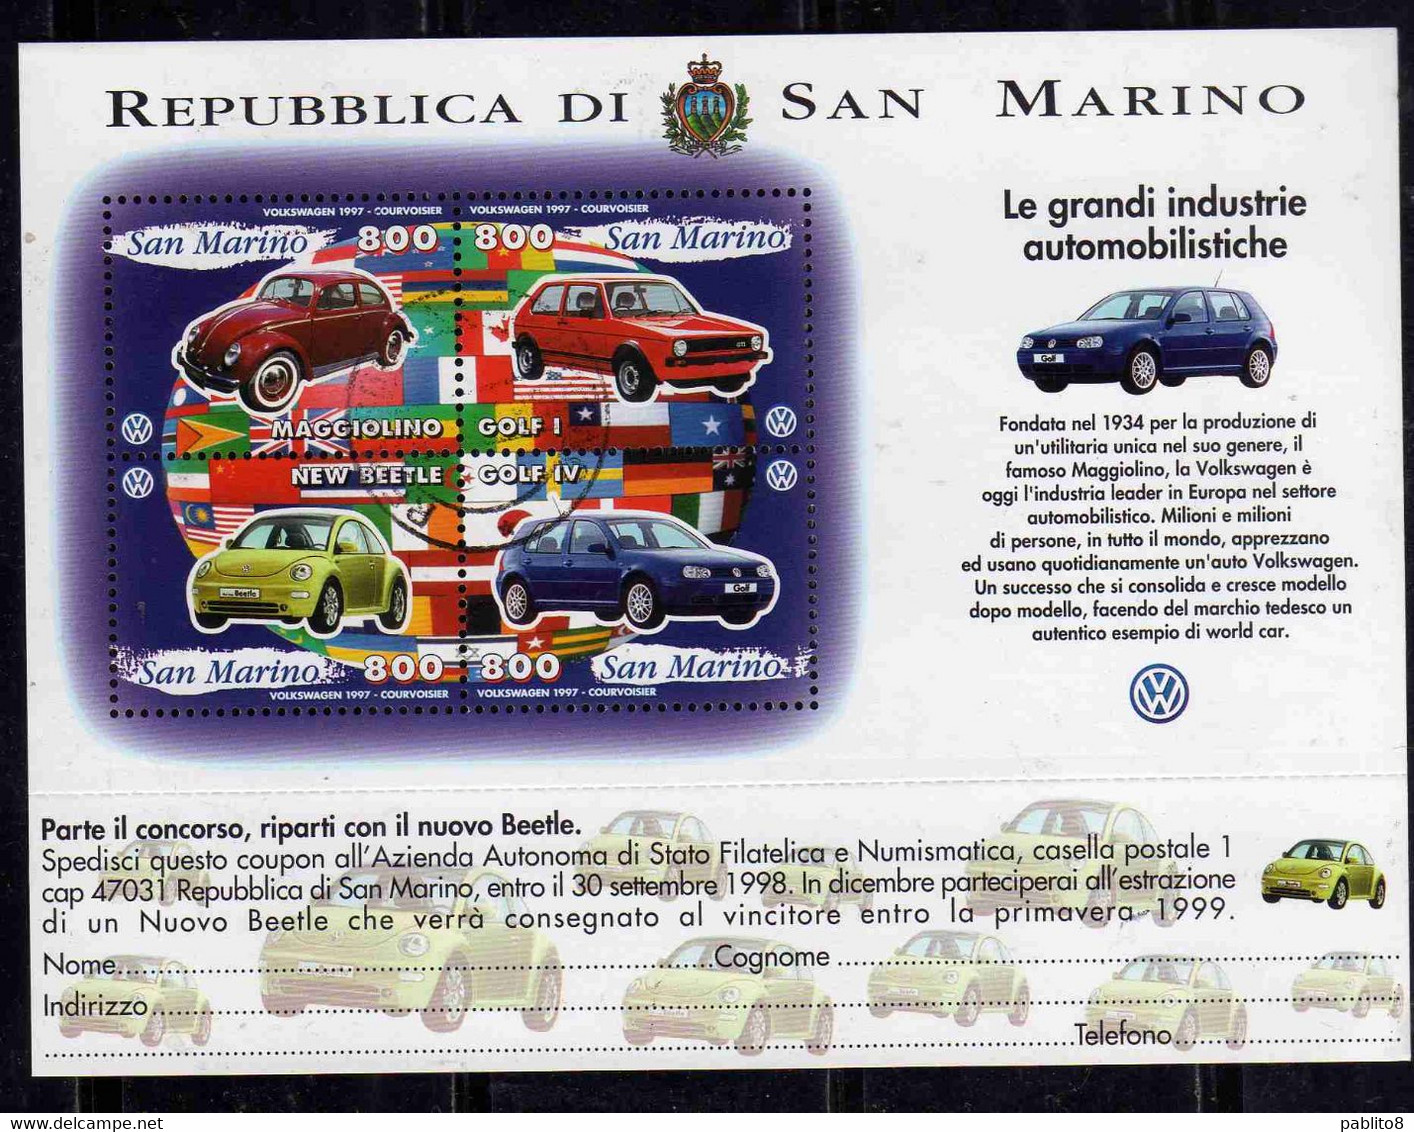 REPUBBLICA DI SAN MARINO 1997 LE GRANDI INDUSTRIE AUTOMOBILISTICHE VOLKSWAGEN BLOCCO FOGLIETTO BLOCK SHEET USATO USED - Usati